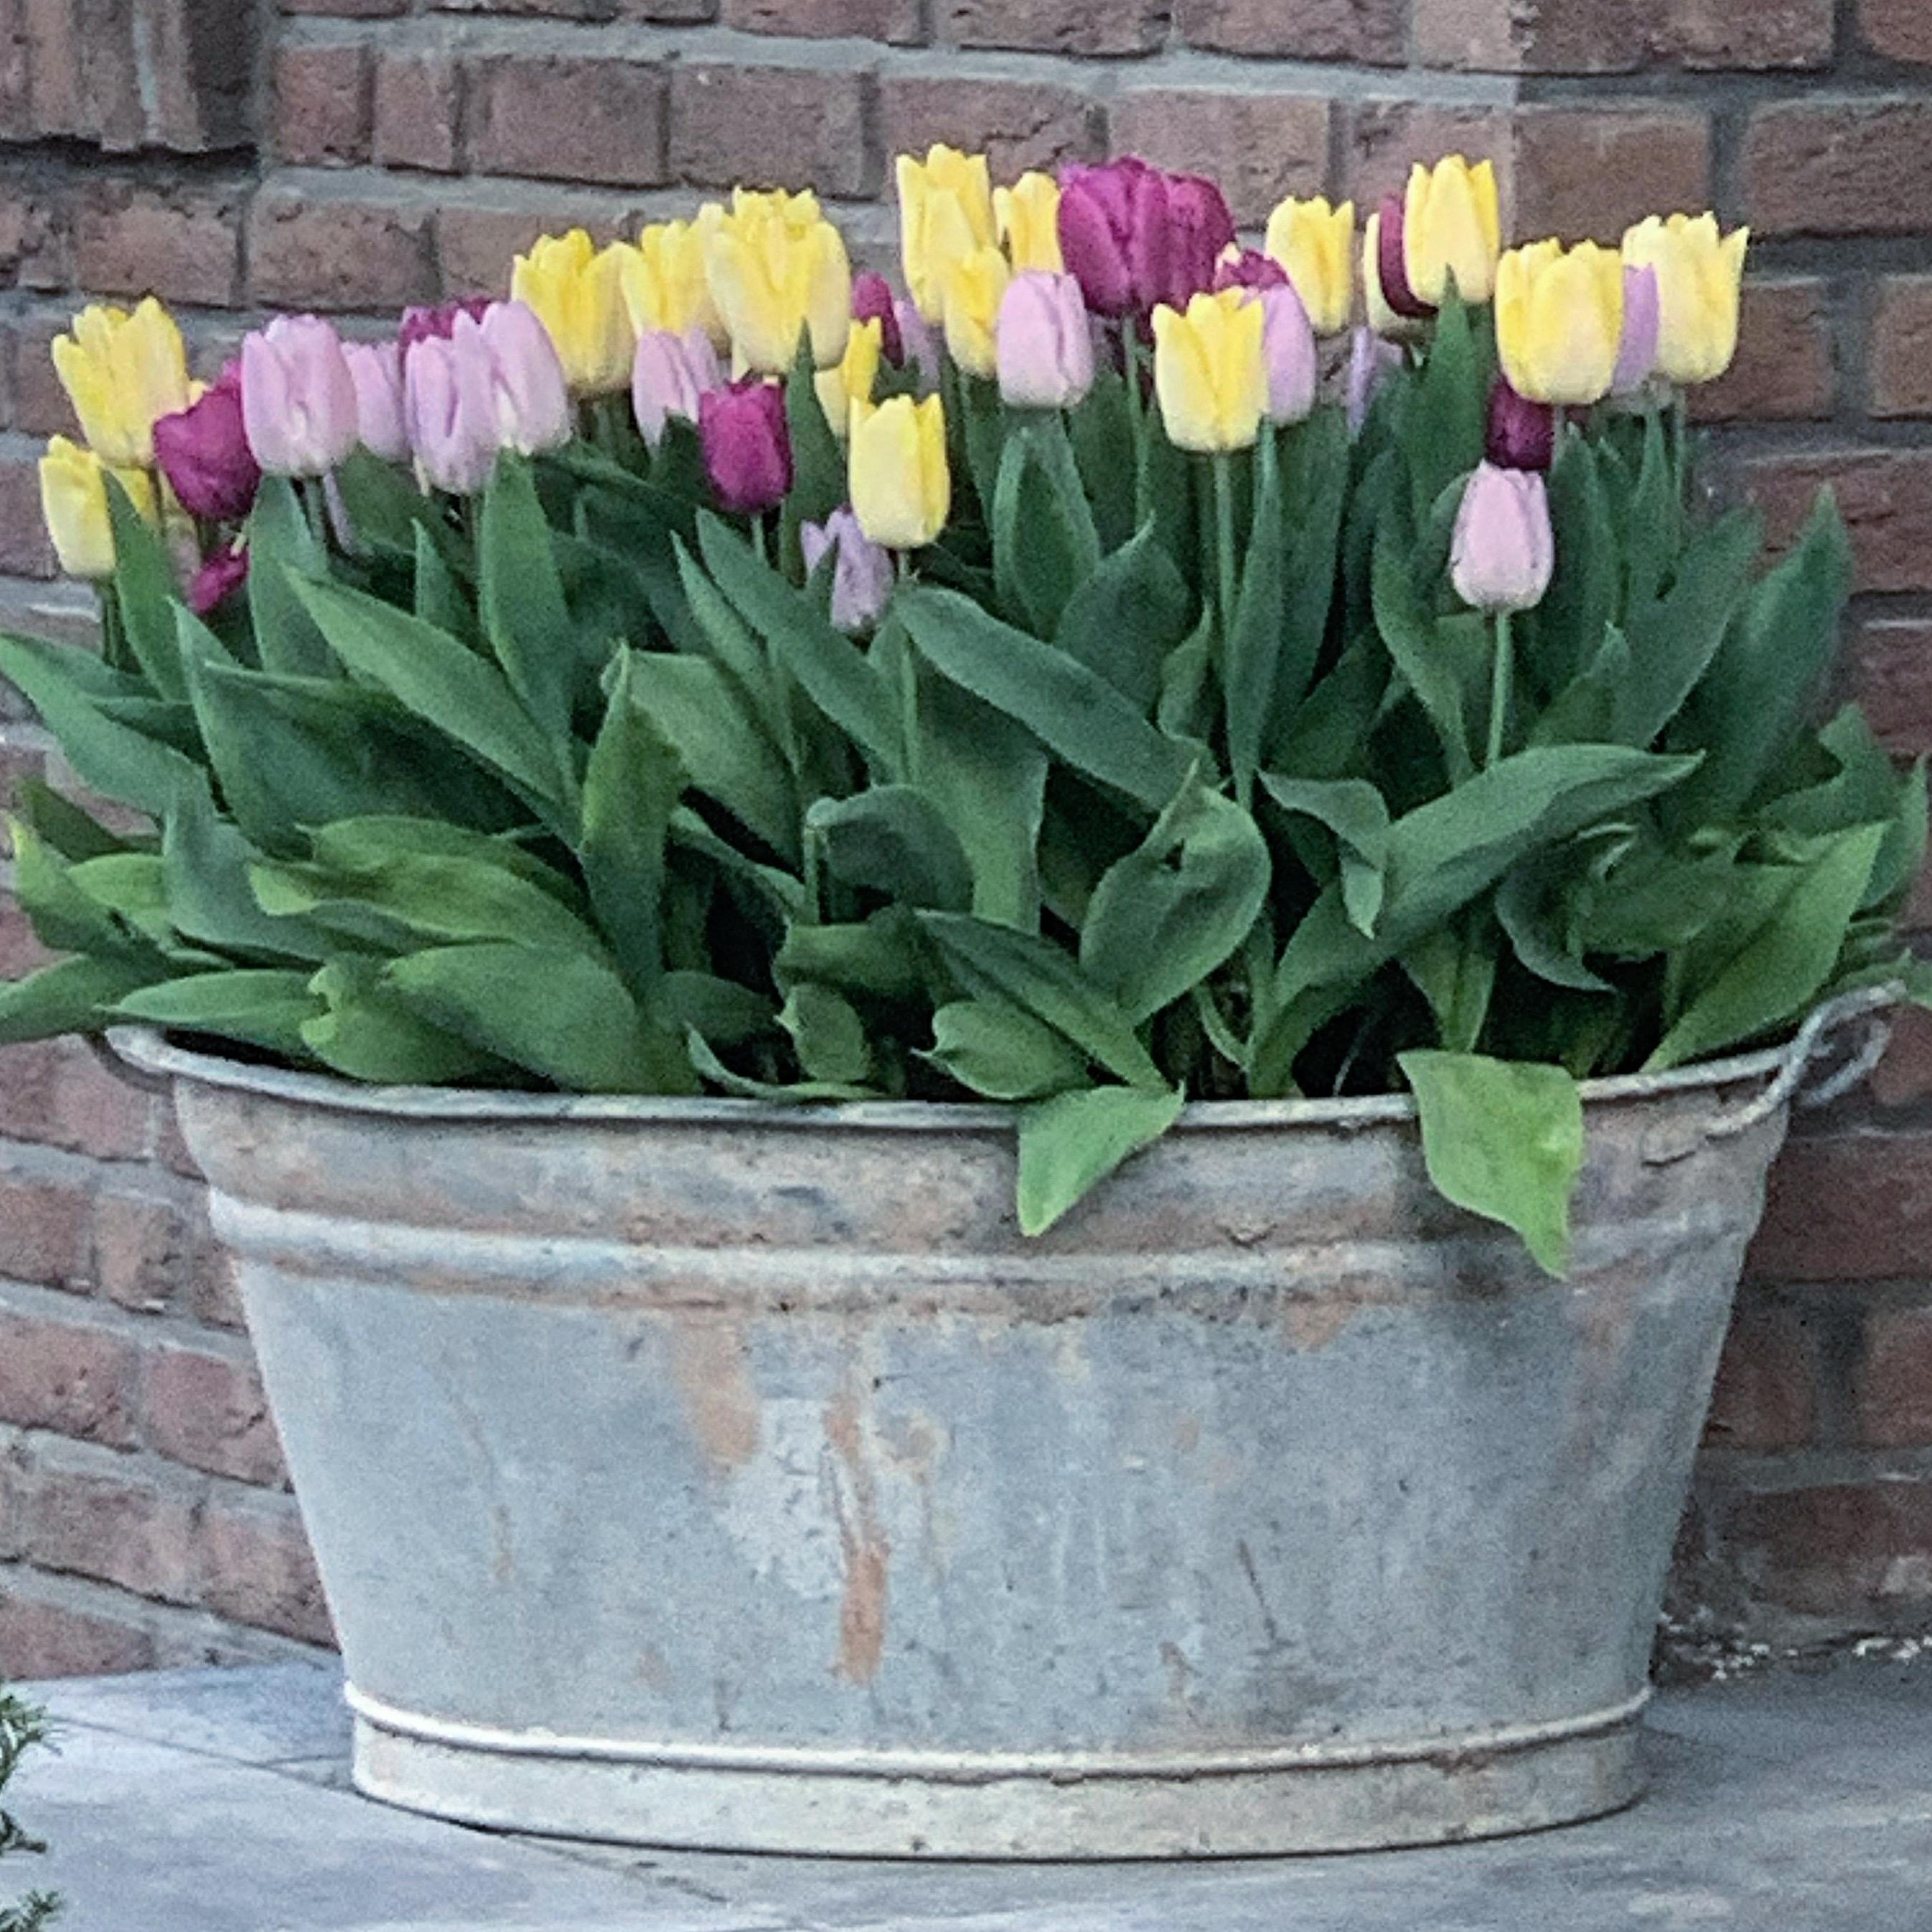 Hier eine Wanne Frühling für euch🌷
#frühlingsblumen #frühlingsdeko #tulpen